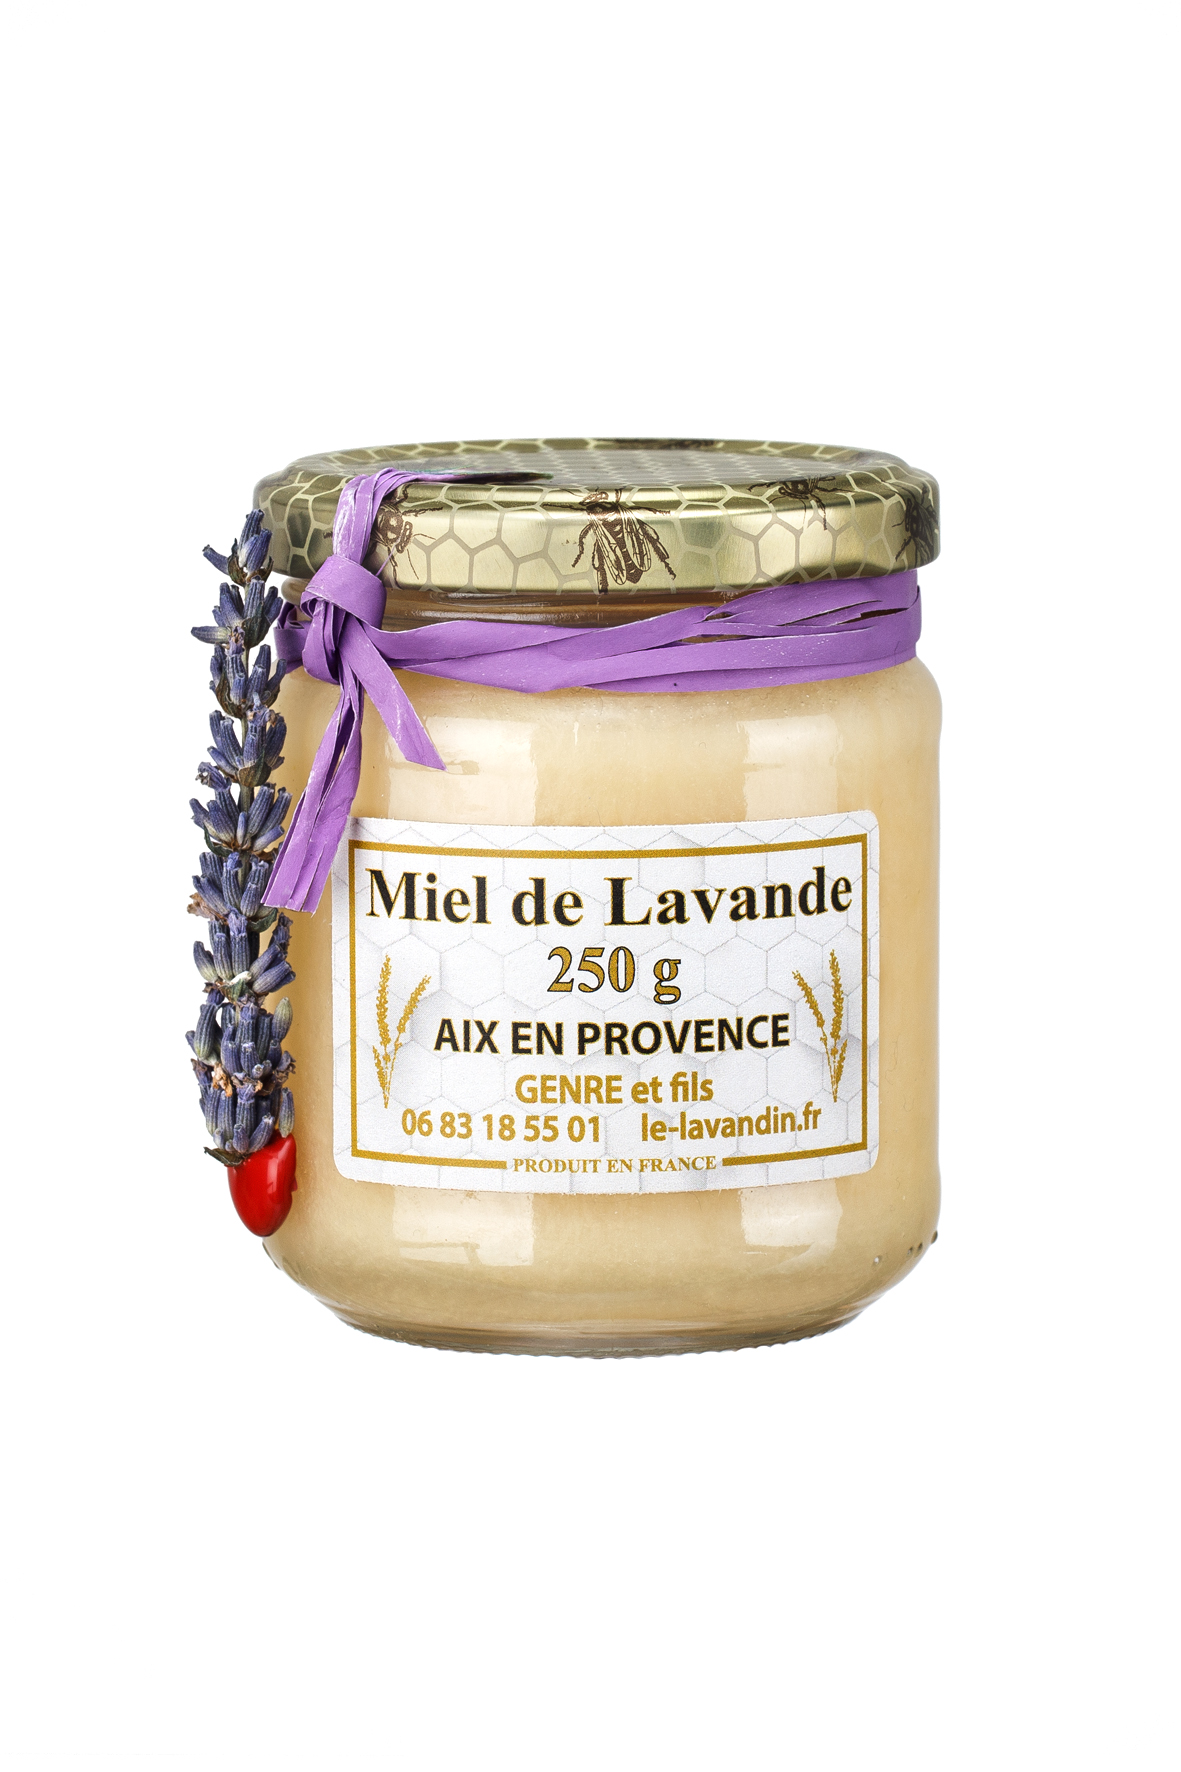 https://le-lavandin.fr/wp-content/uploads/2017/02/miel-de-lavande-artisanal-250-g.jpg